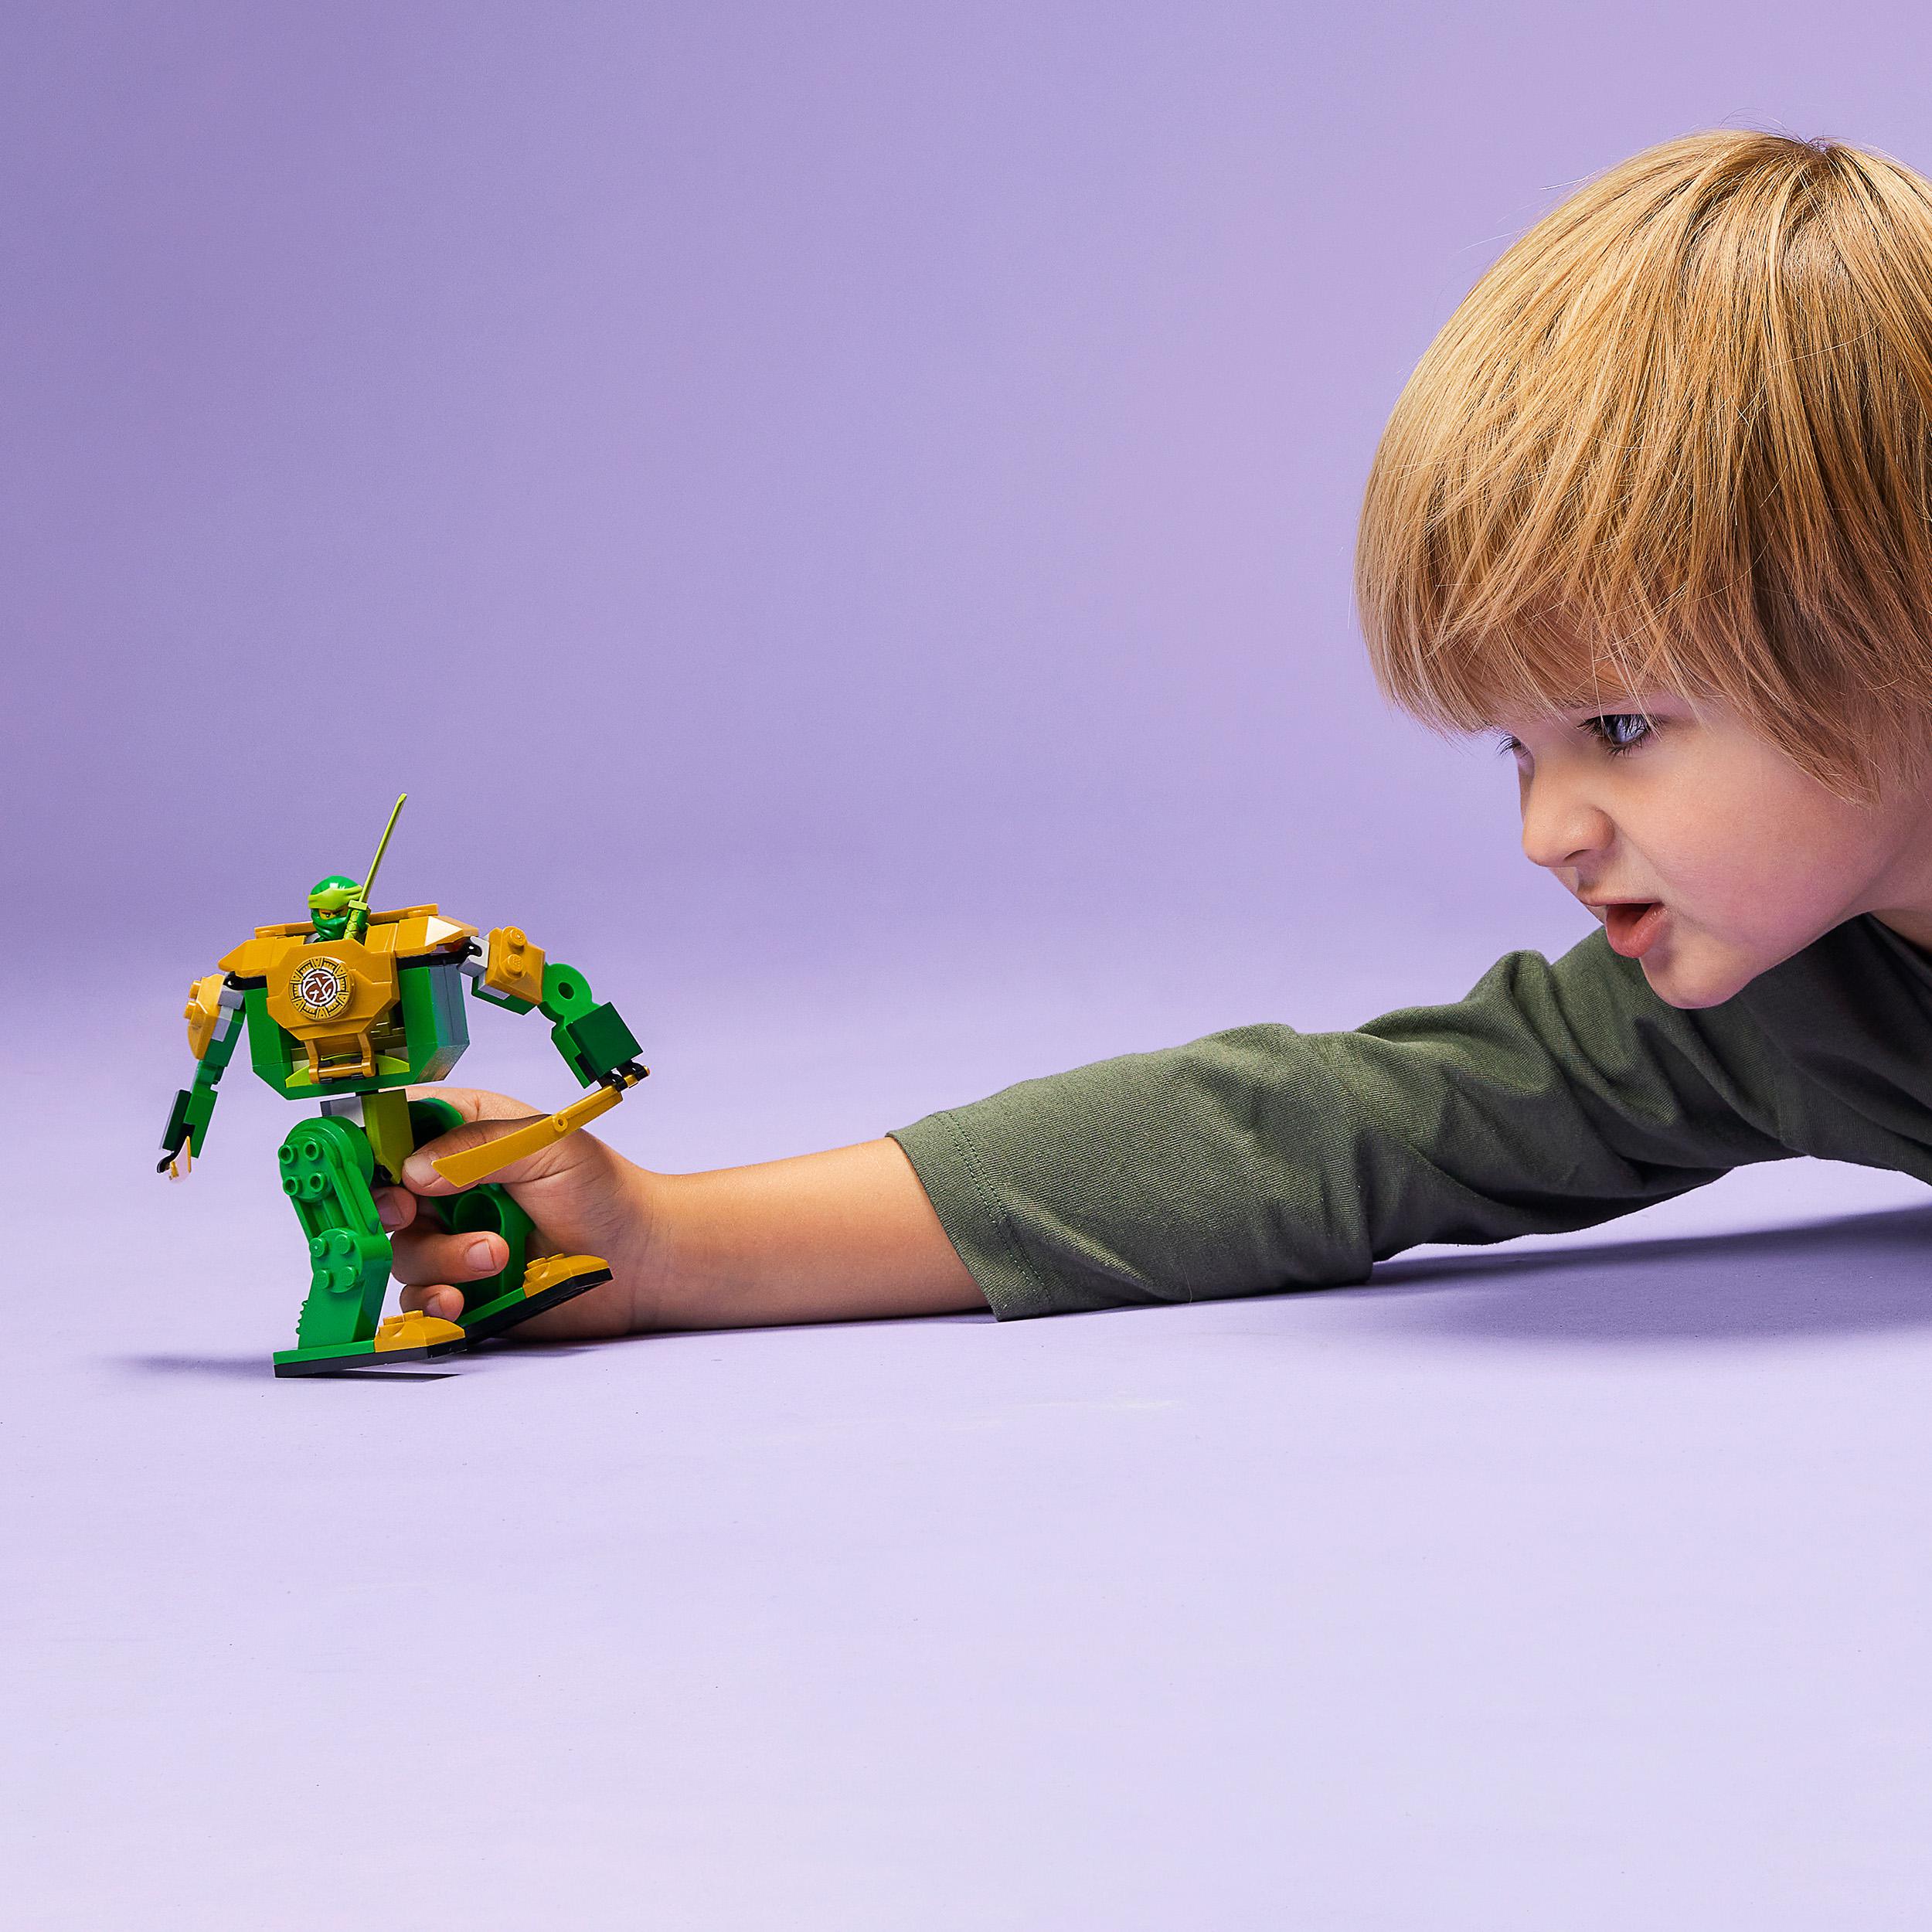 Lego ninjago mech ninja di lloyd, set per bambini dai 4 anni in su, con giocattolo snodabile e guerriero serpente, 71757 - LEGO NINJAGO, Lego